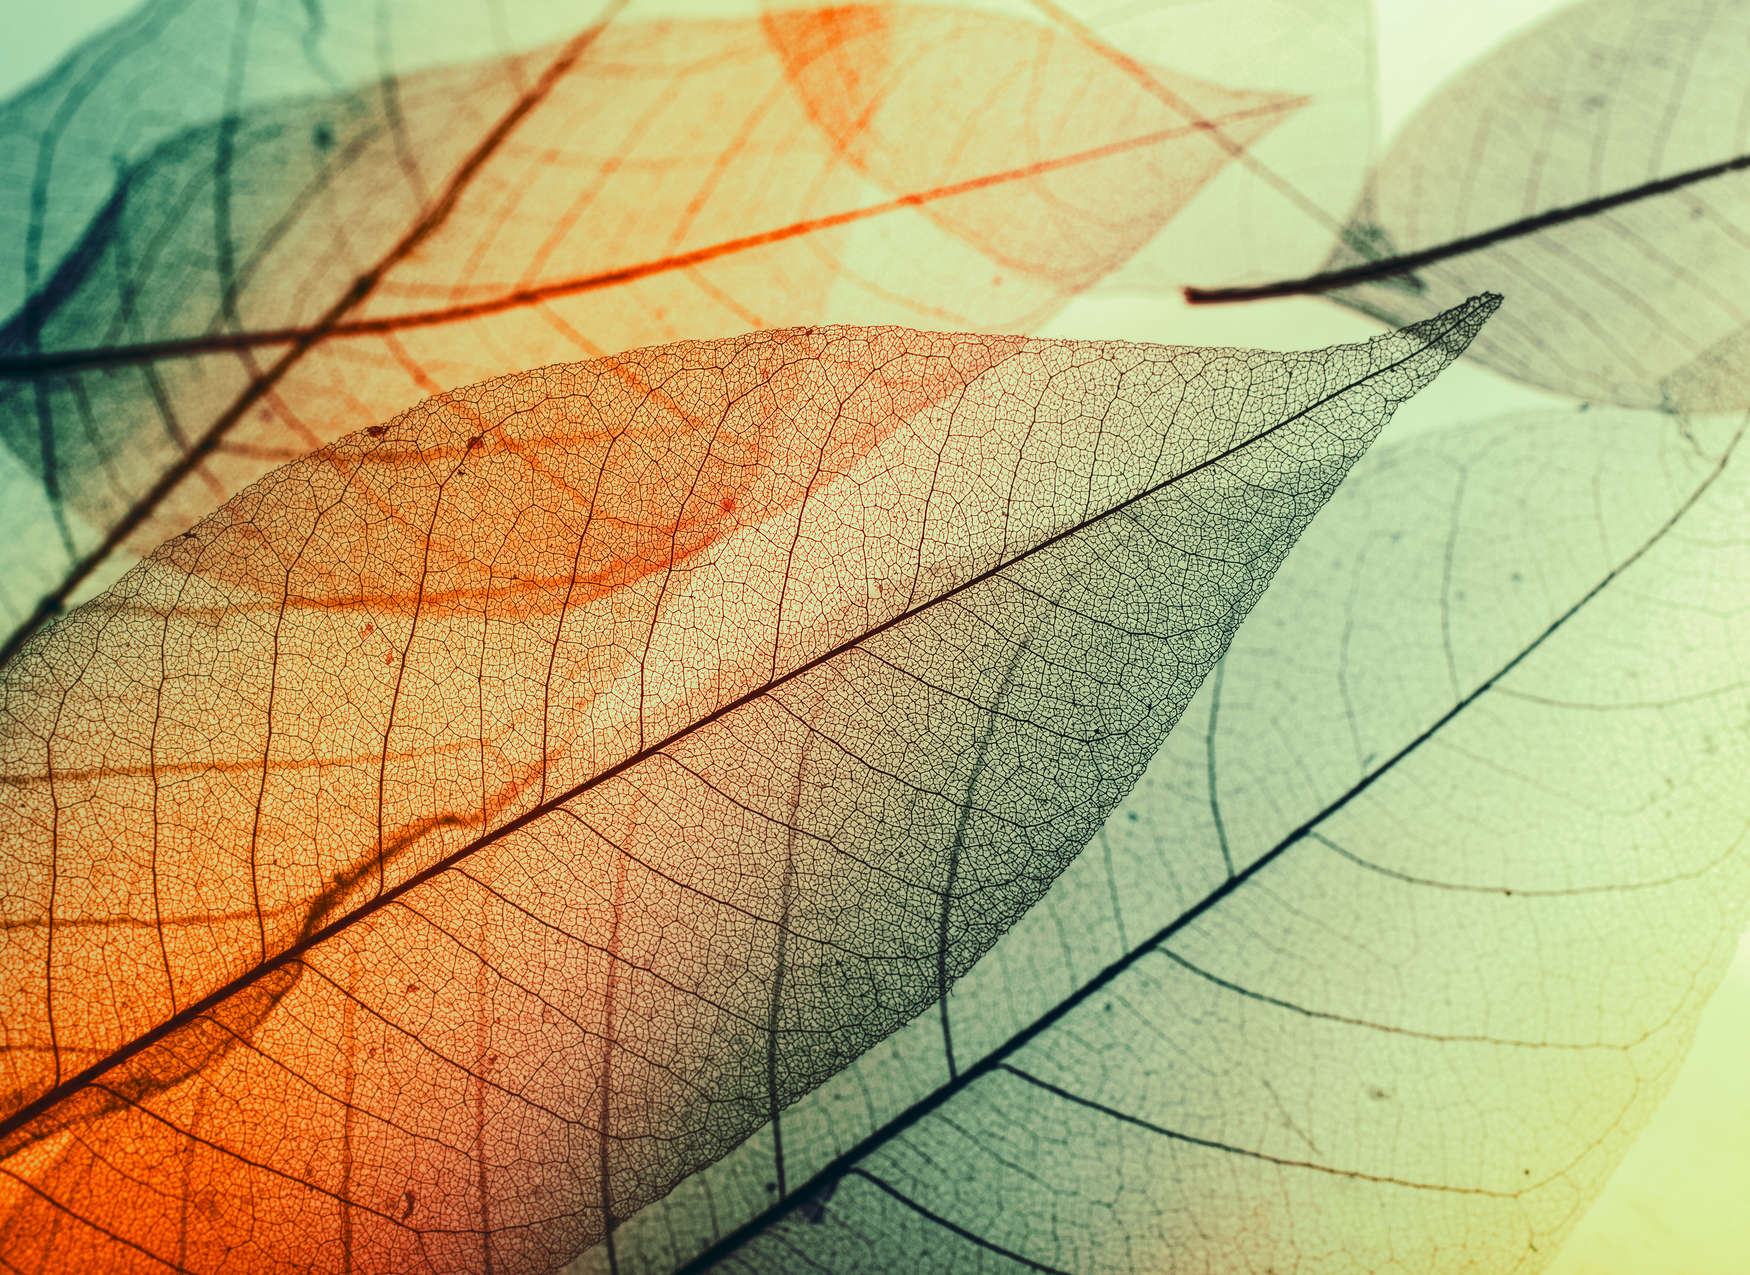             Fototapete mit Blätter-Design – Grün, Orange, Schwarz
        